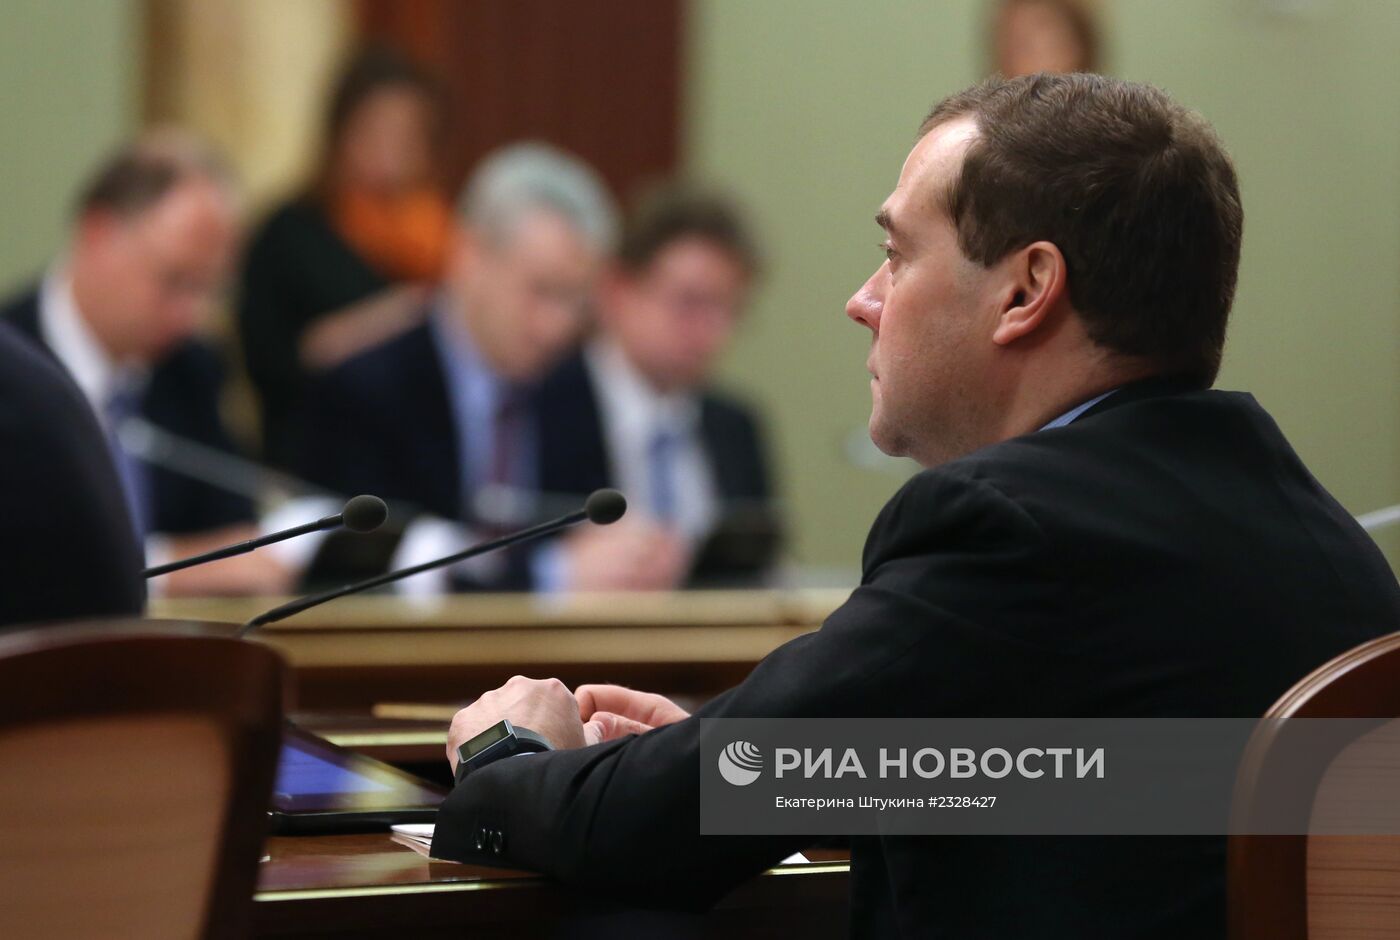 Д.Медведев провел совещание по вопросам создания МФЦ